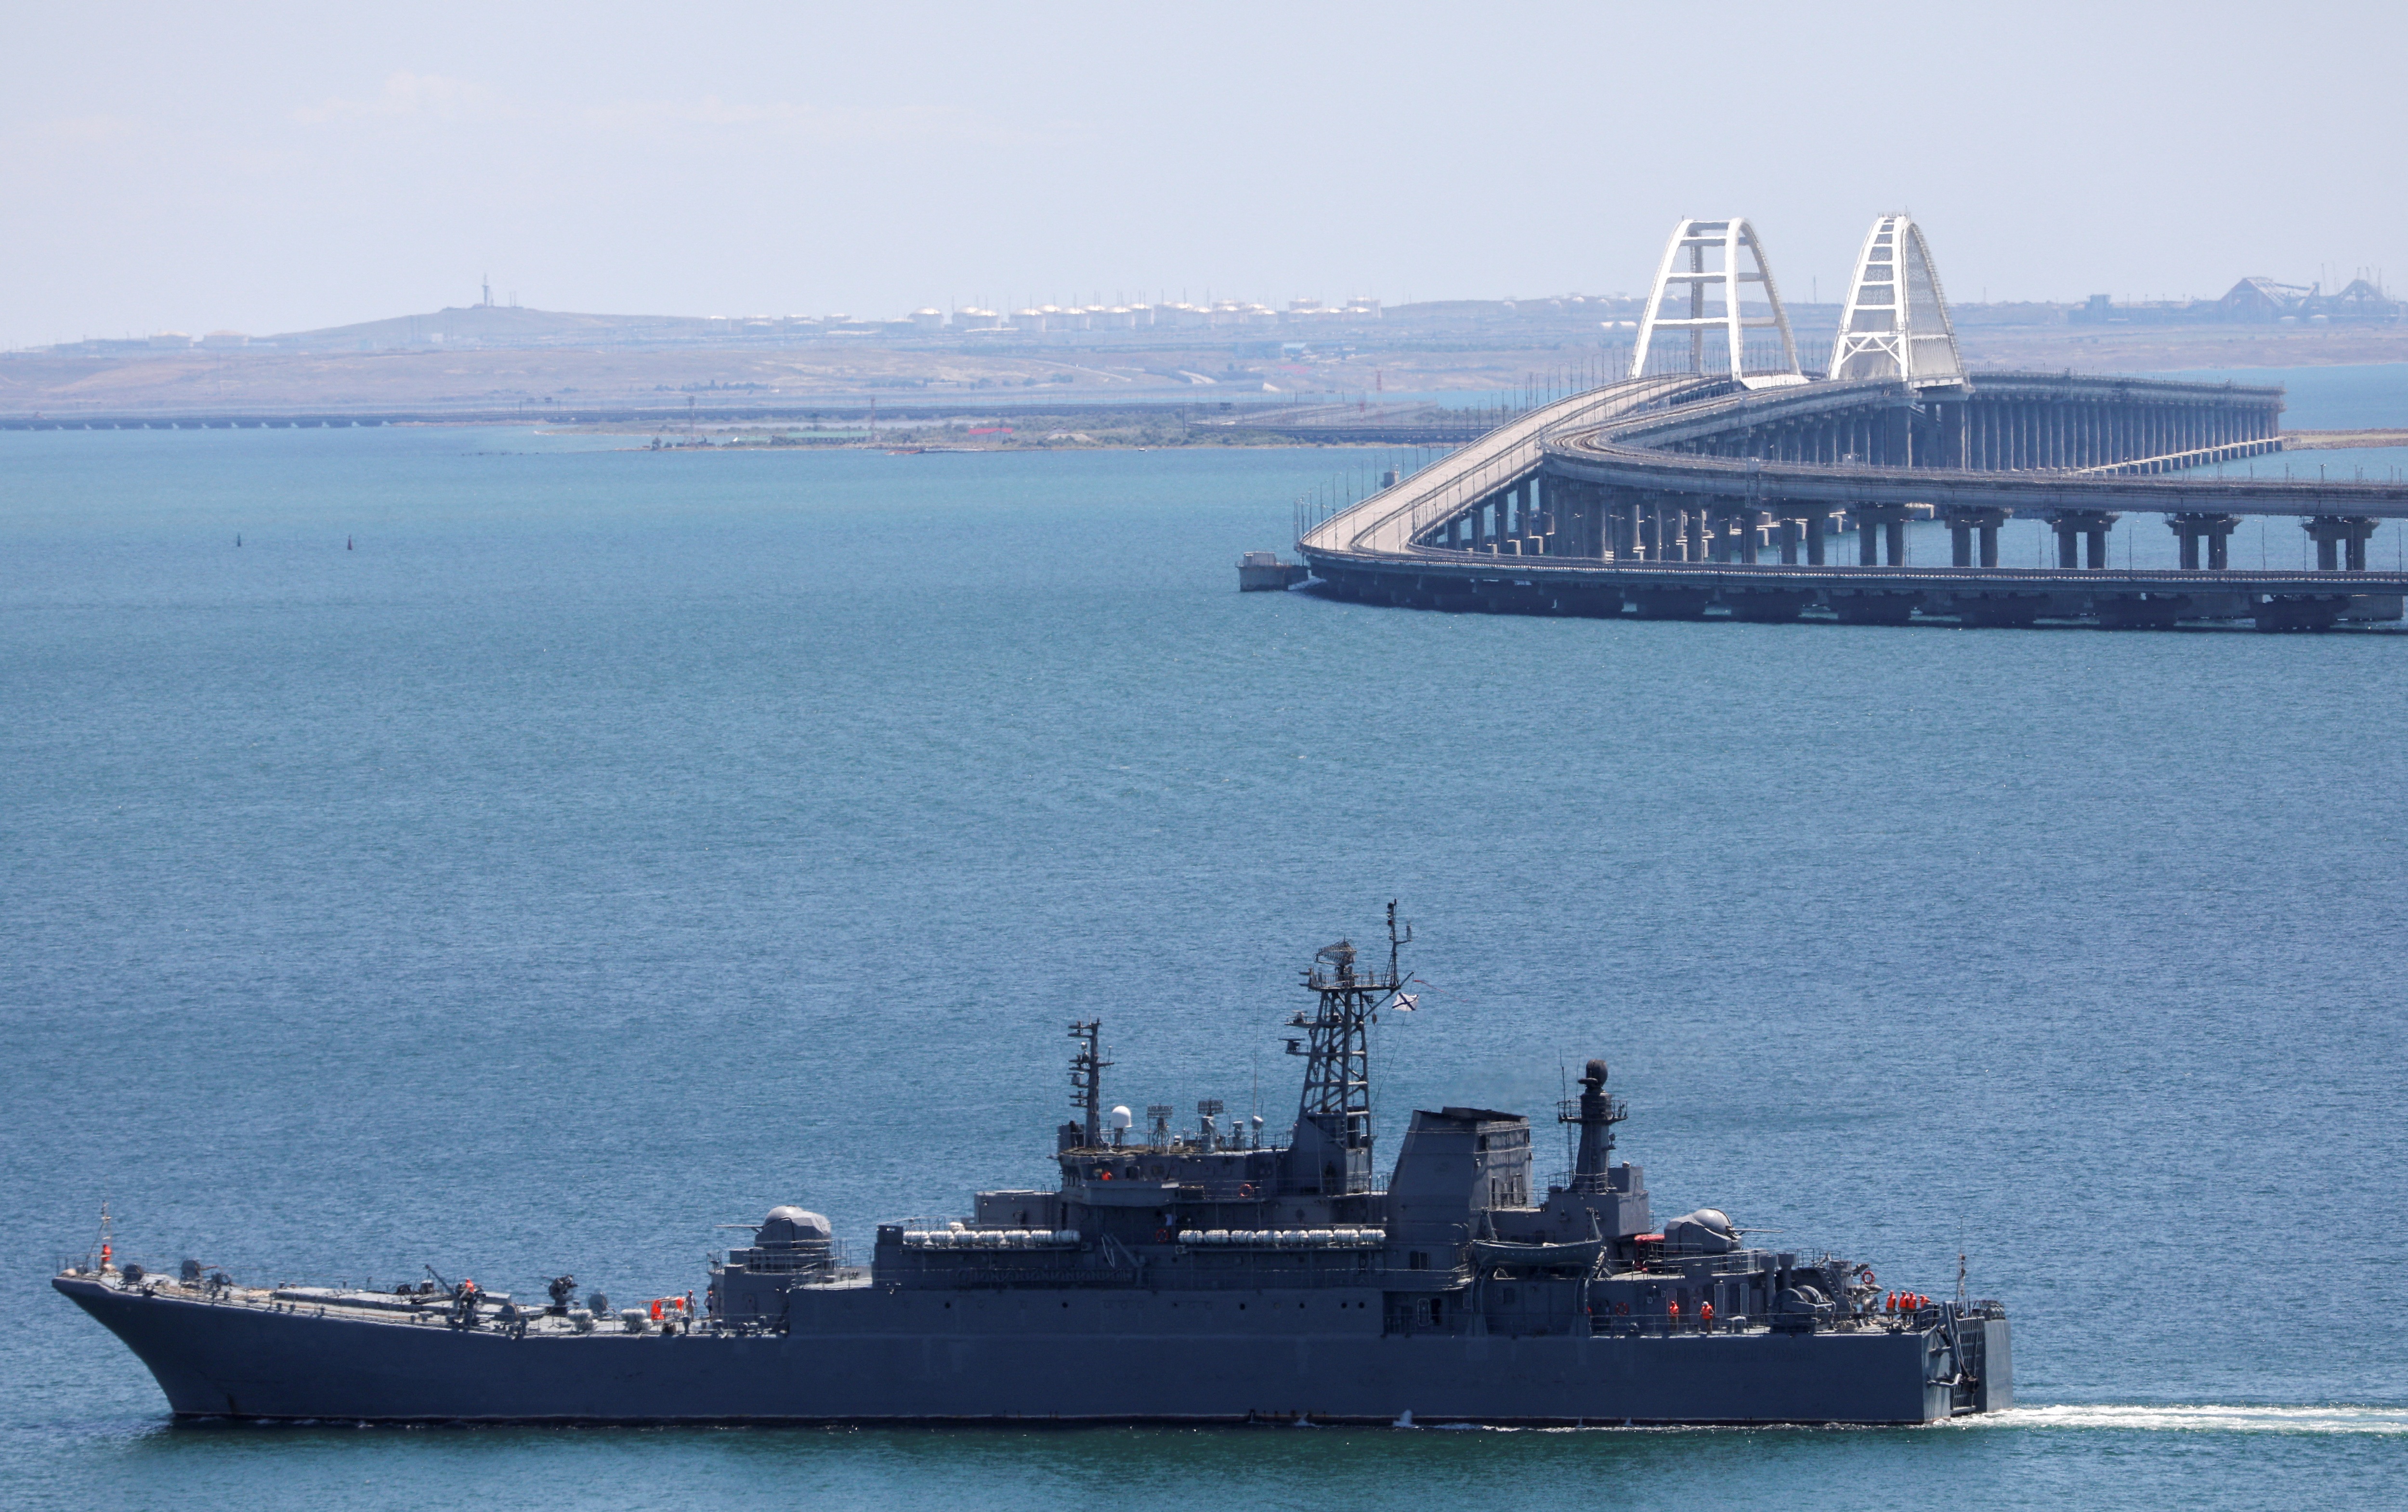 View - Nỗ lực phòng vệ của Nga trước các vụ tấn công vào cầu Crimea huyết mạch | Báo Dân trí